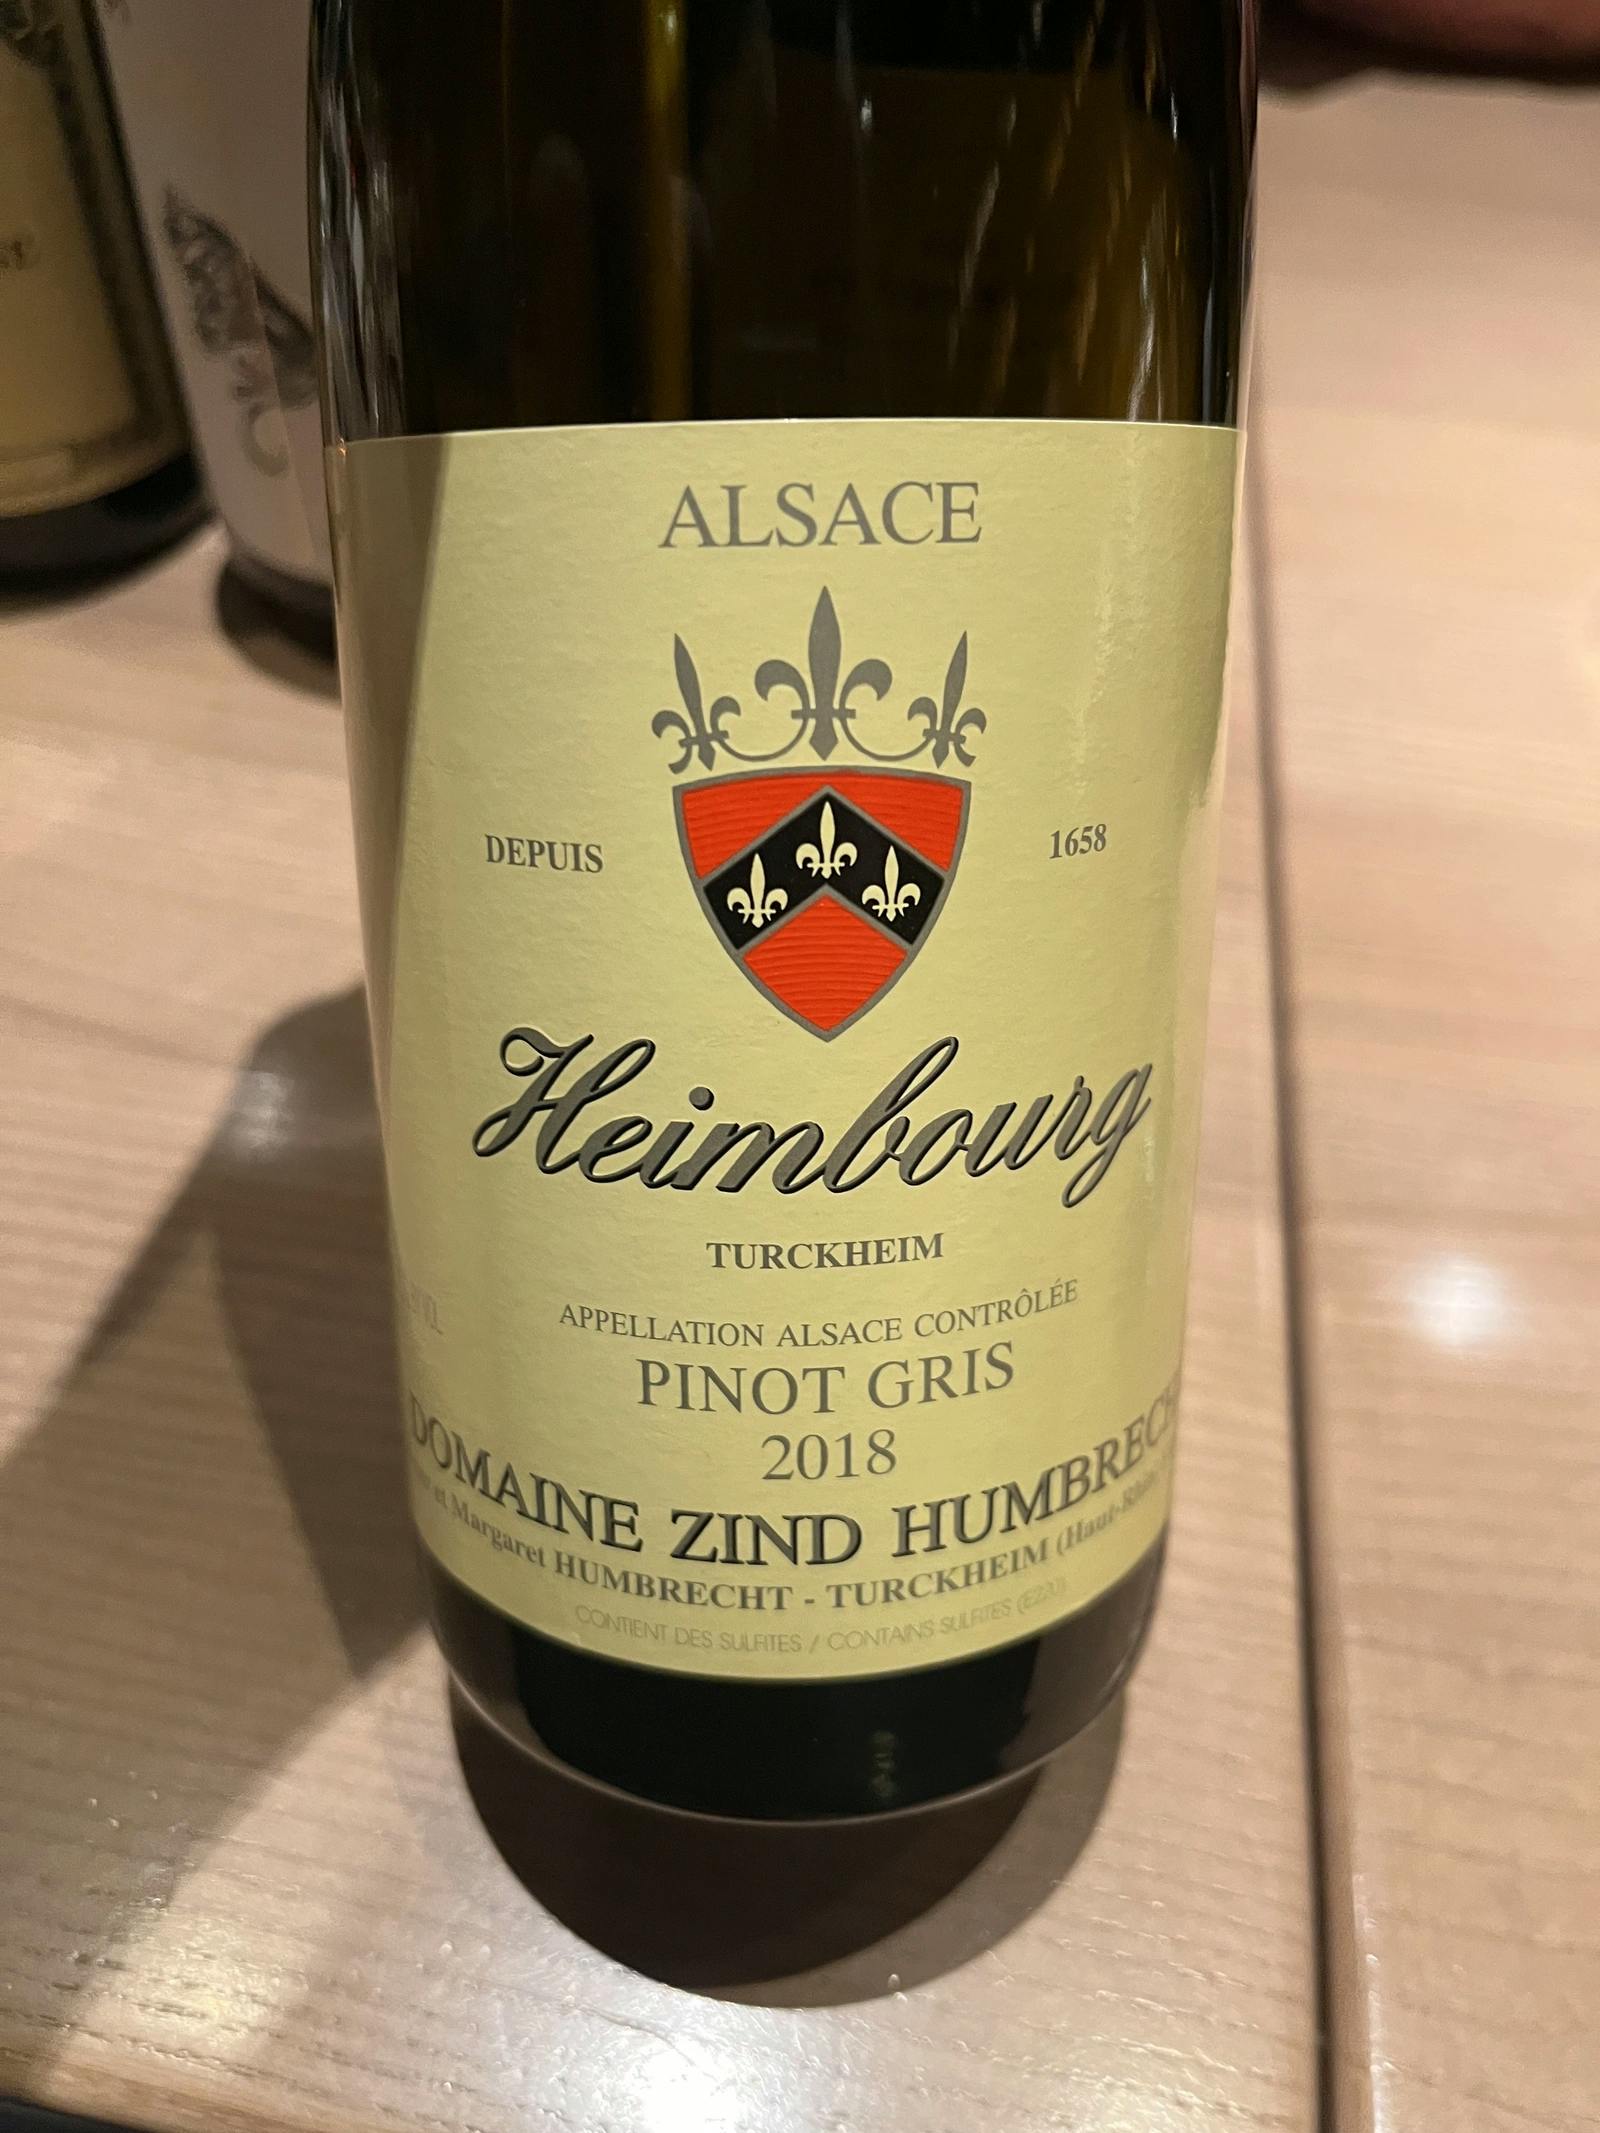 Domaine Zind Humbrecht Heimbourg Turckheim Pinot Gris 2018